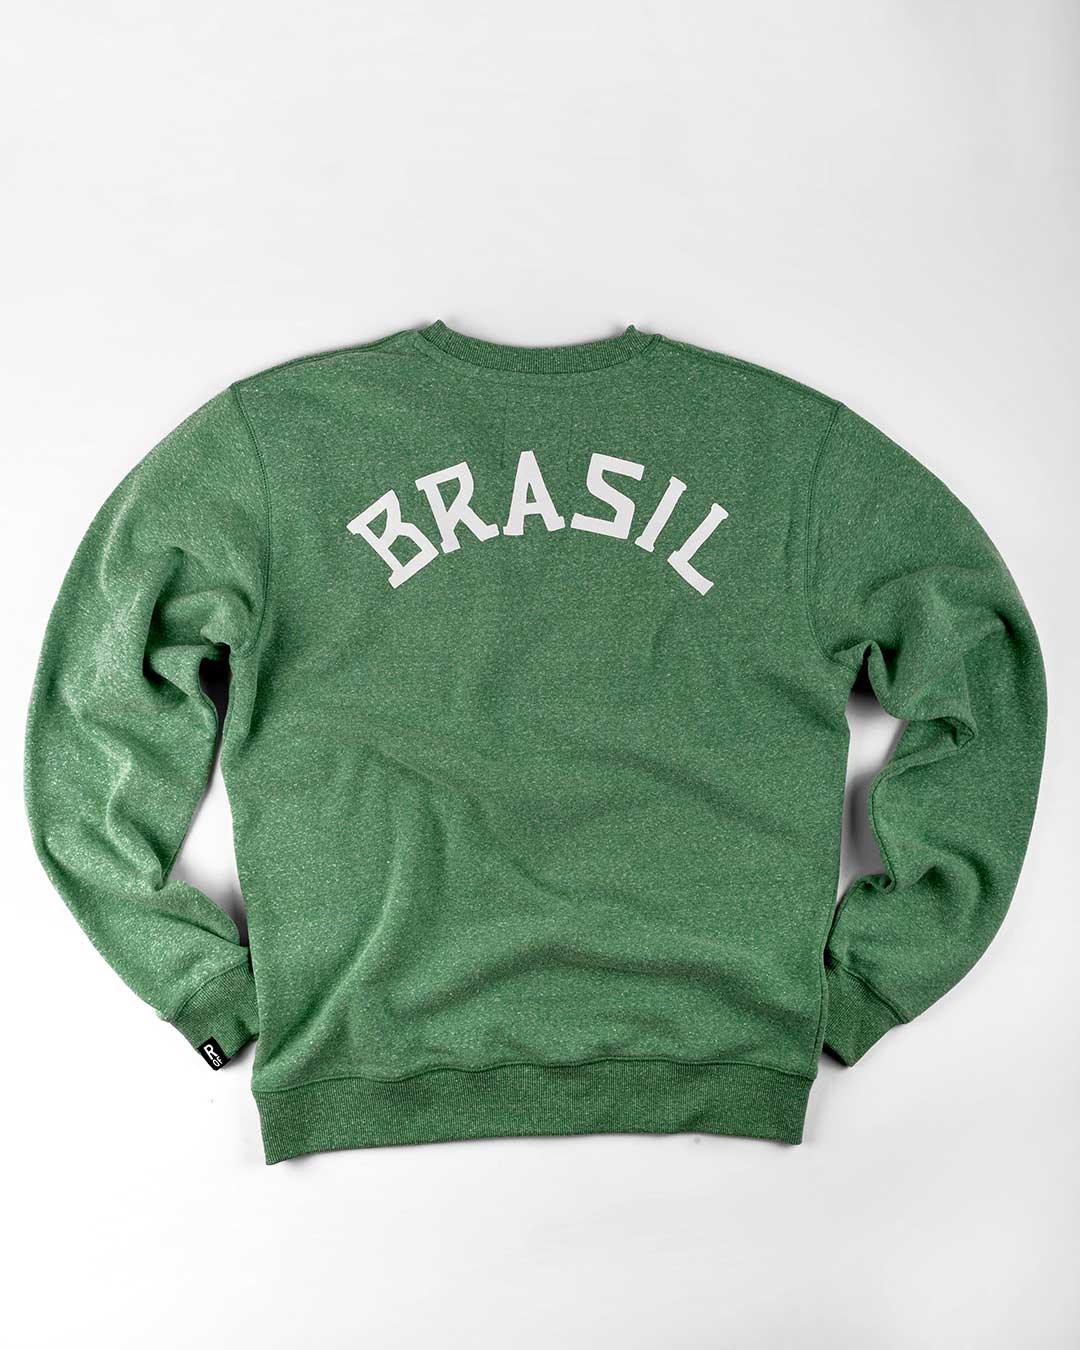 Pelé 1962 Brasil Green Sweatshirt - Roots of Fight